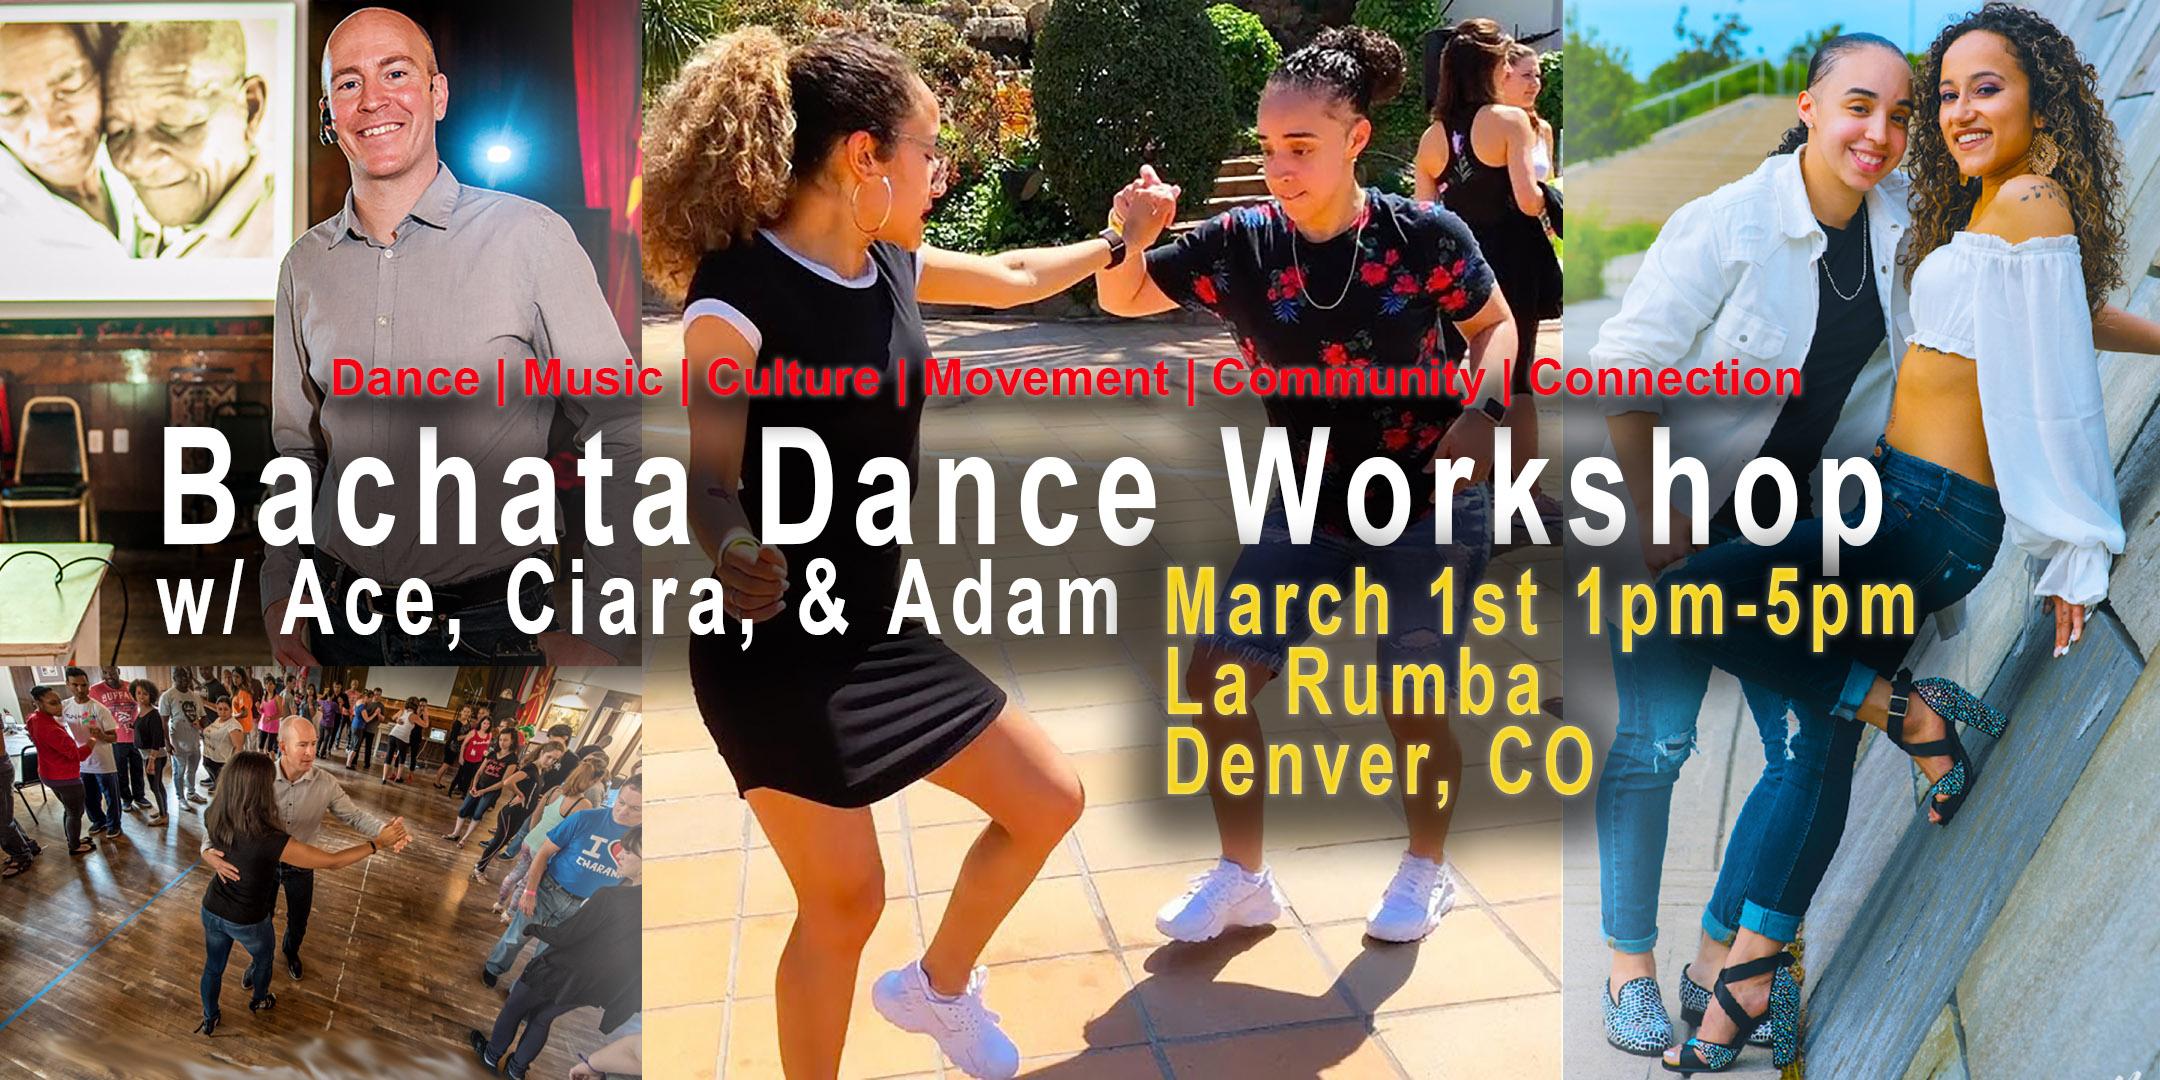 Bachata Dance Workshop in Denver w/ Ace, Ciara & Adam Taub